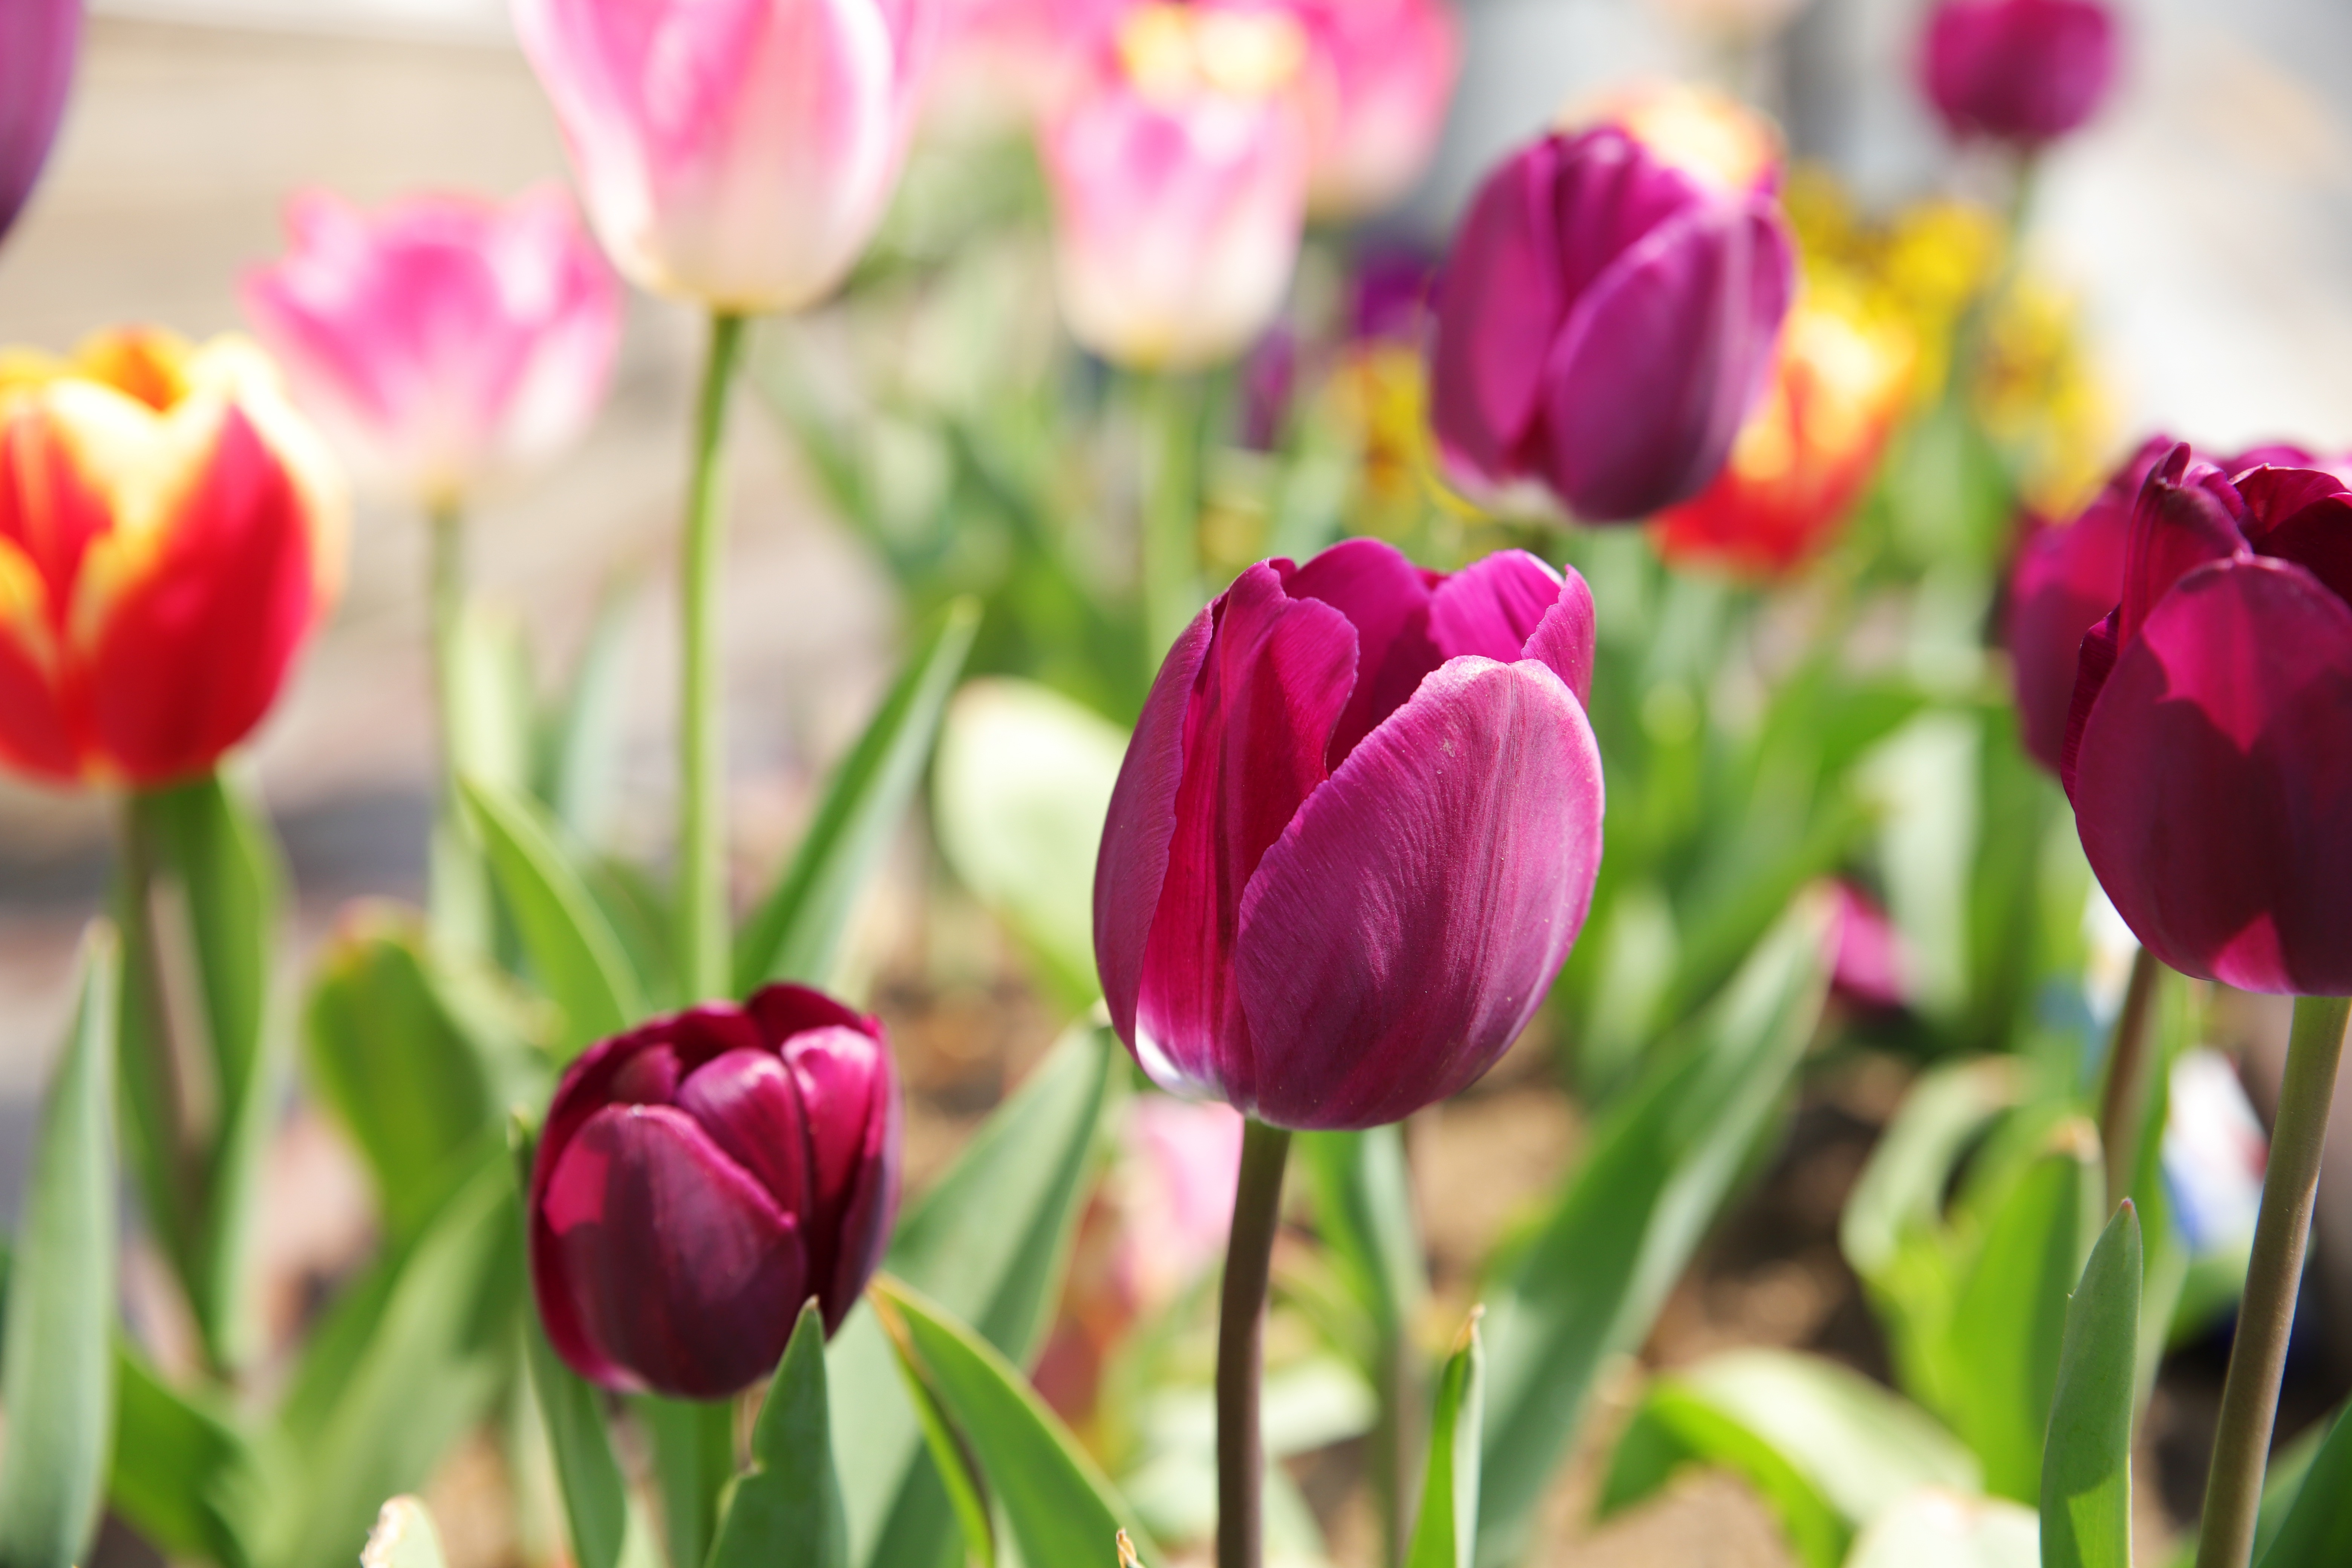 Скачать обои бесплатно Цветок, Весна, Тюльпан, Земля/природа картинка на рабочий стол ПК